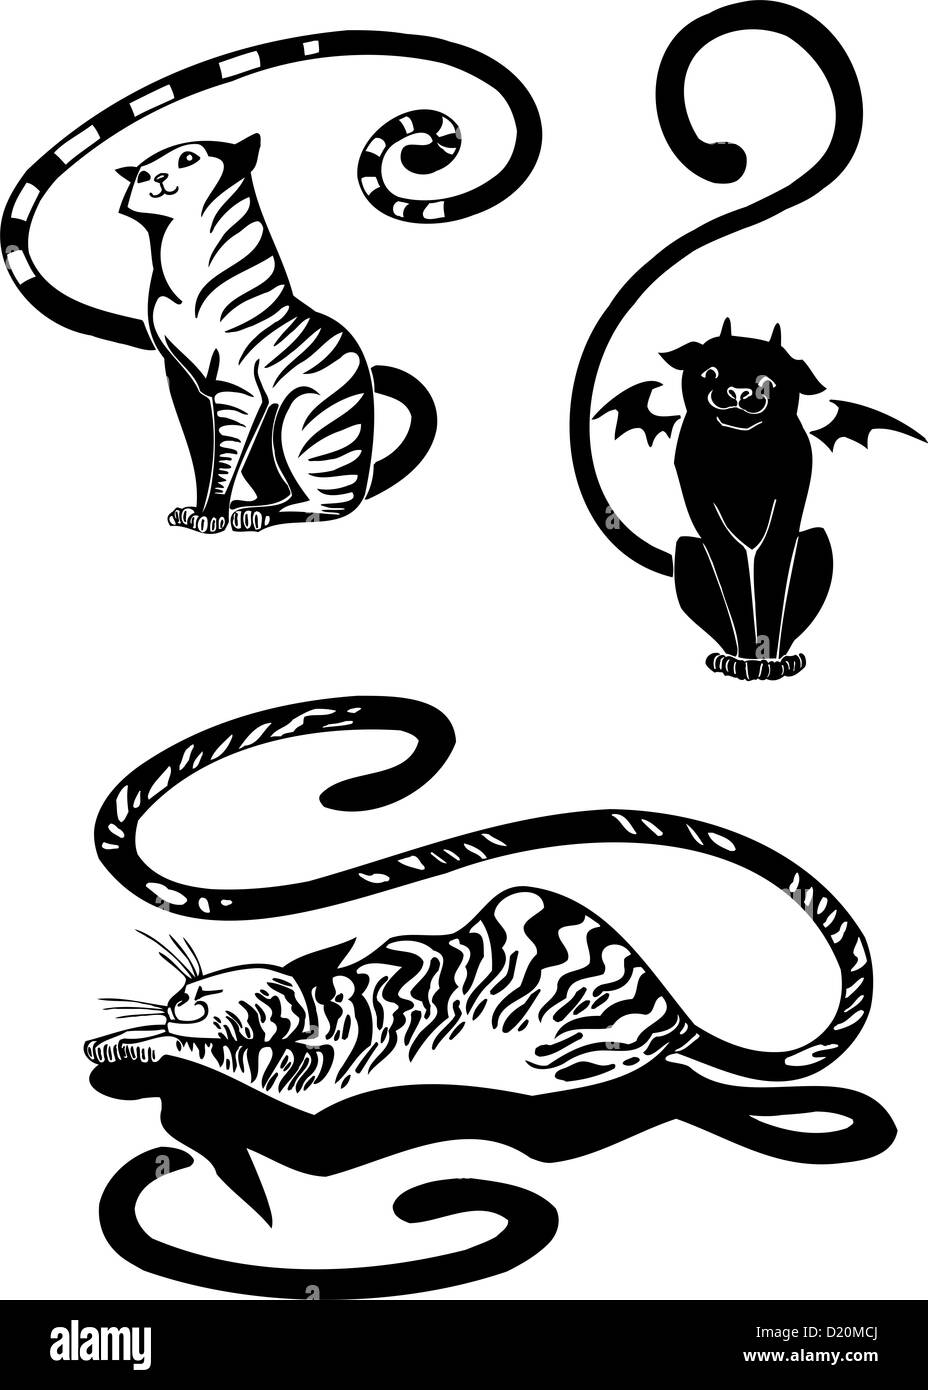 Les chats stylisés - élégance et la grâce des chats. Banque D'Images